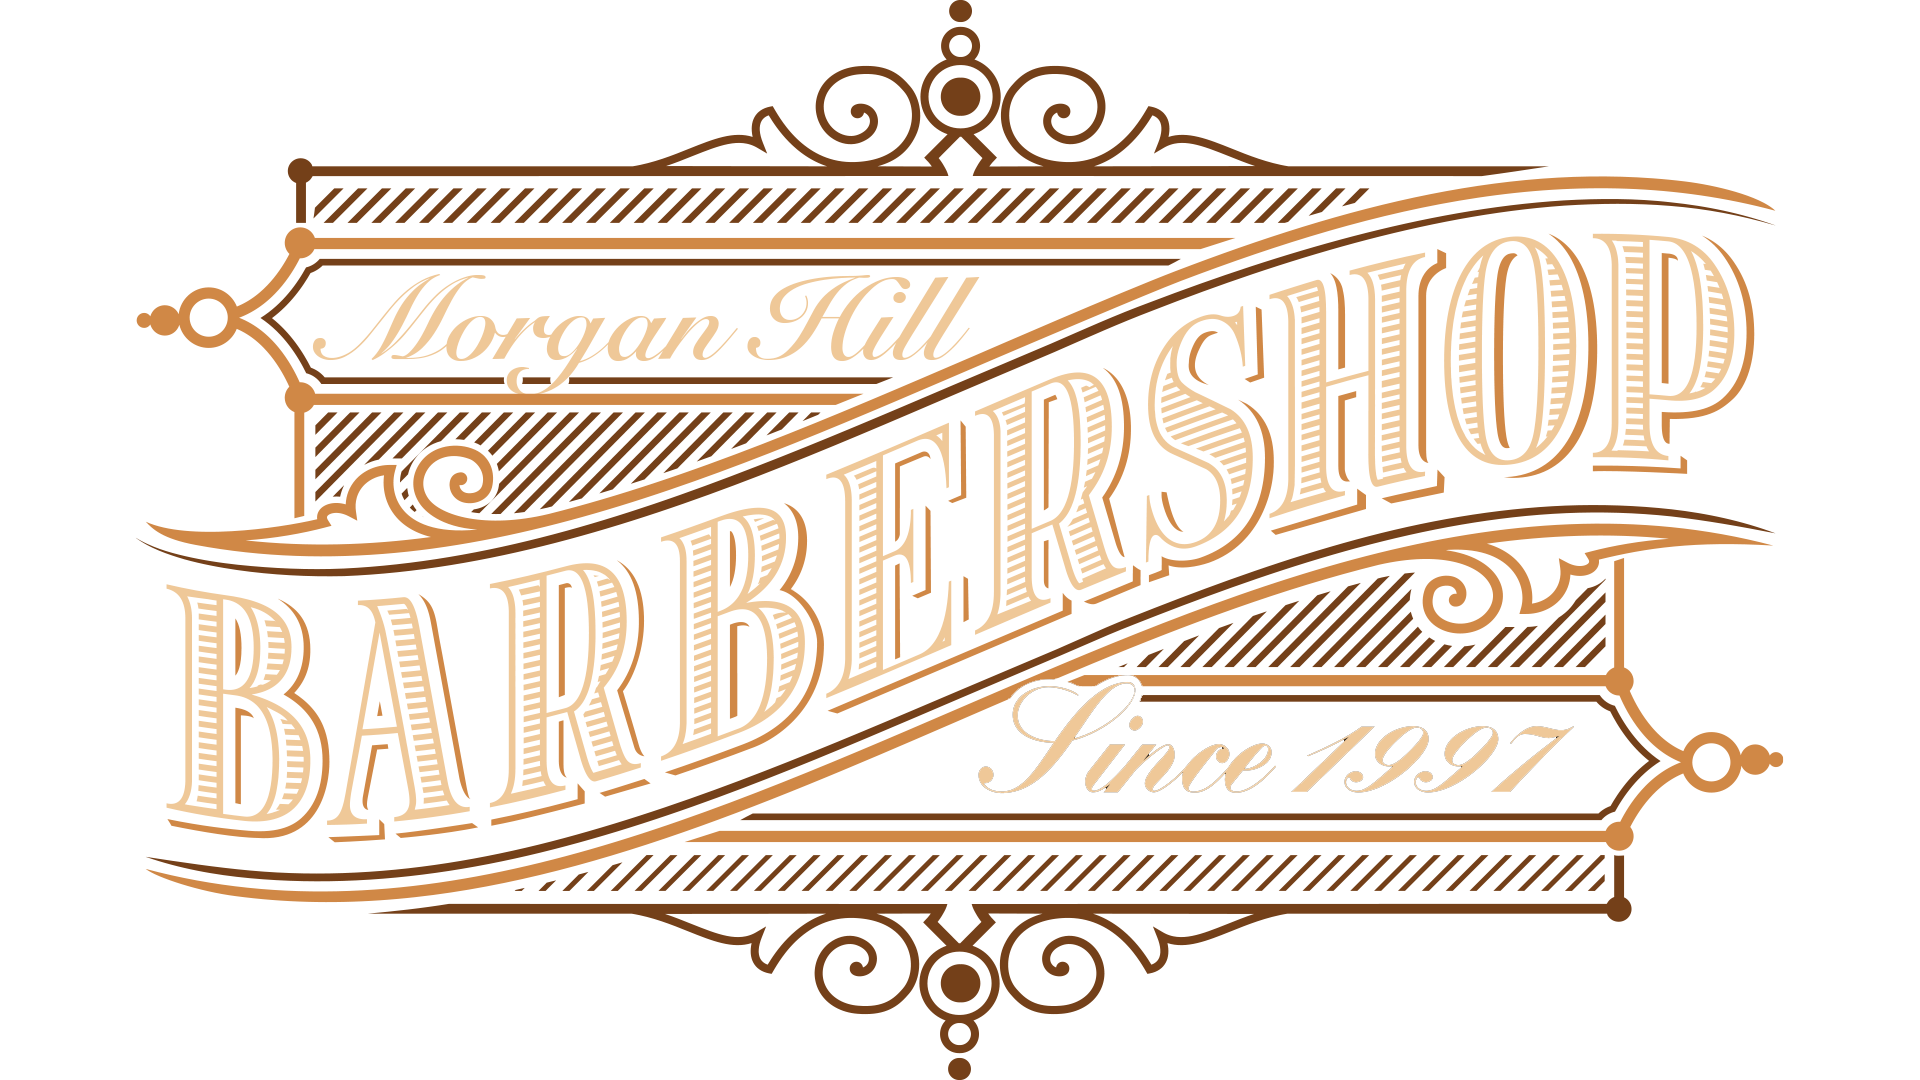 Morgan Hill Barber Shop